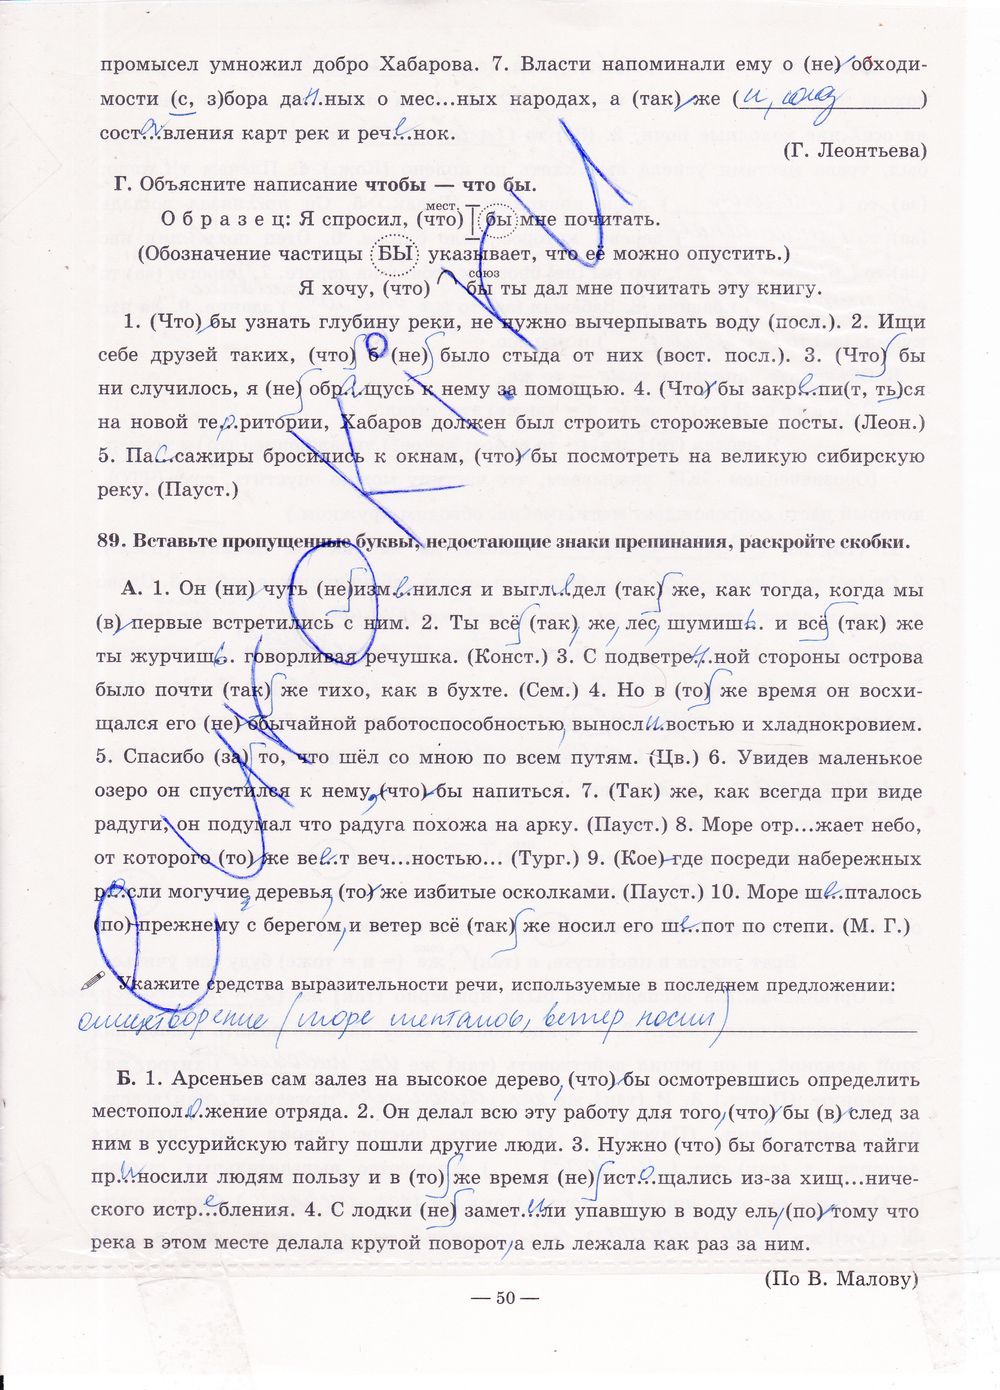 ГДЗ Русский язык 7 класс - стр. 50